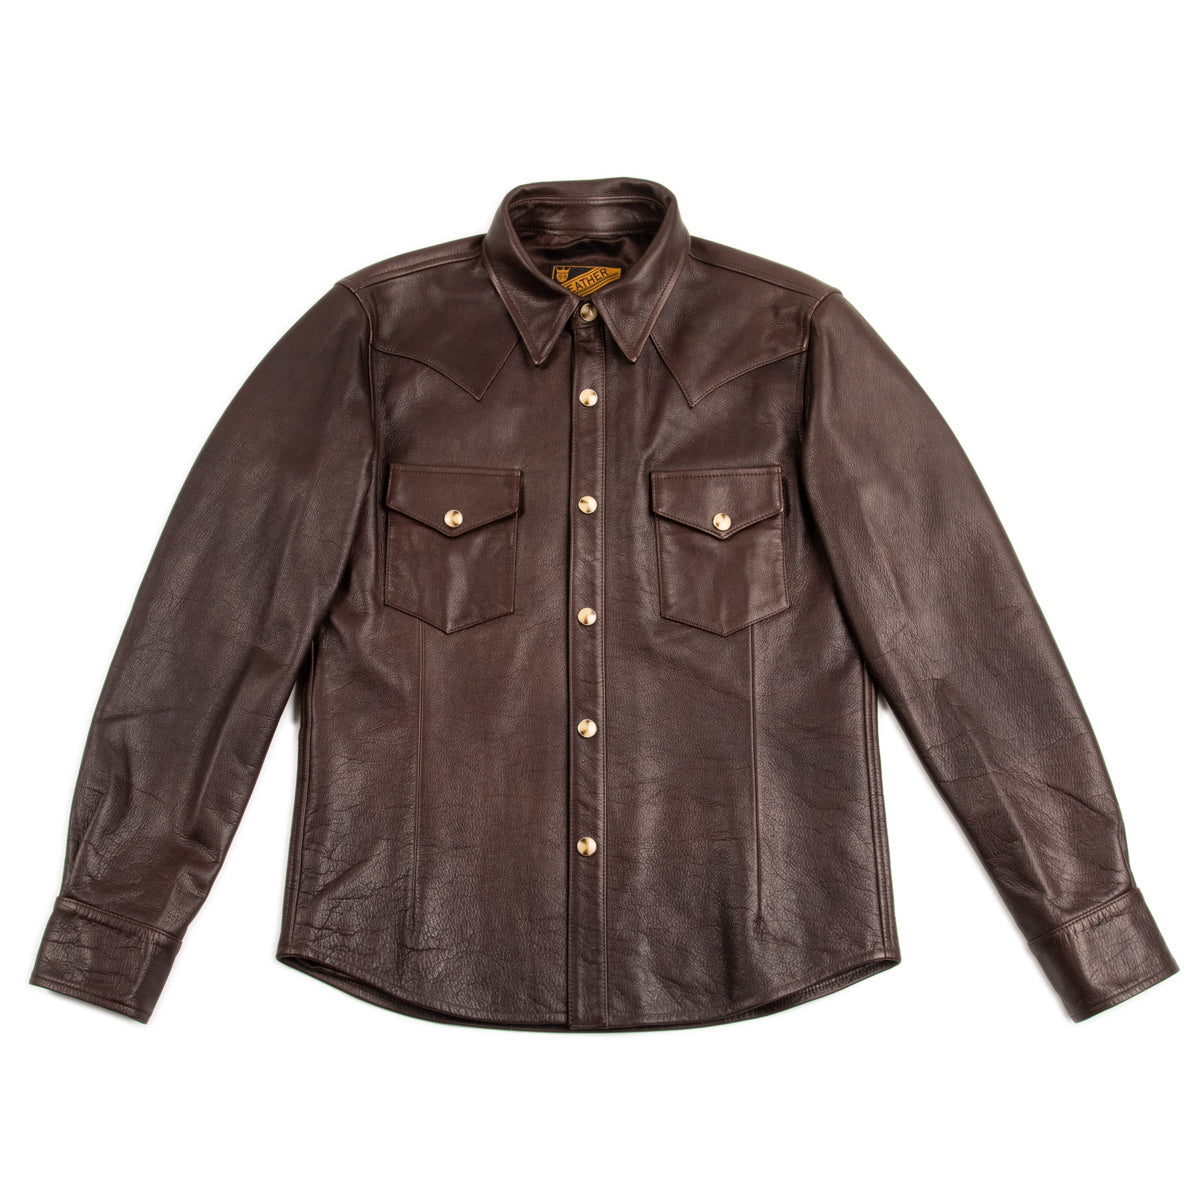 Steer Oil Western Shirt - Brown (SS-13)